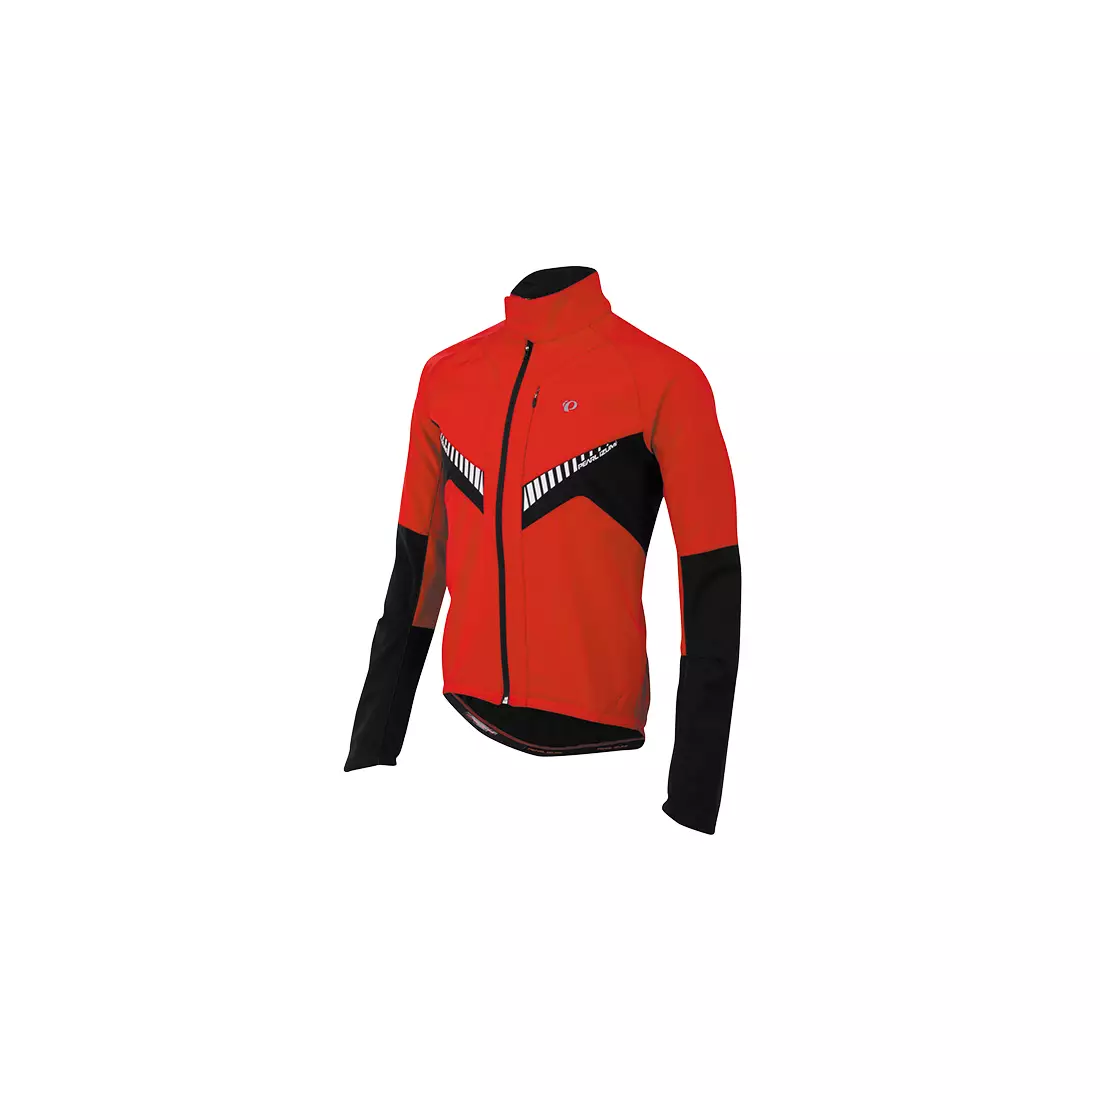 PEARL IZUMI - ELITE SOFTSHELL JACKET 11131407-3DM - pánská cyklistická bunda, barva: Červeno-černá